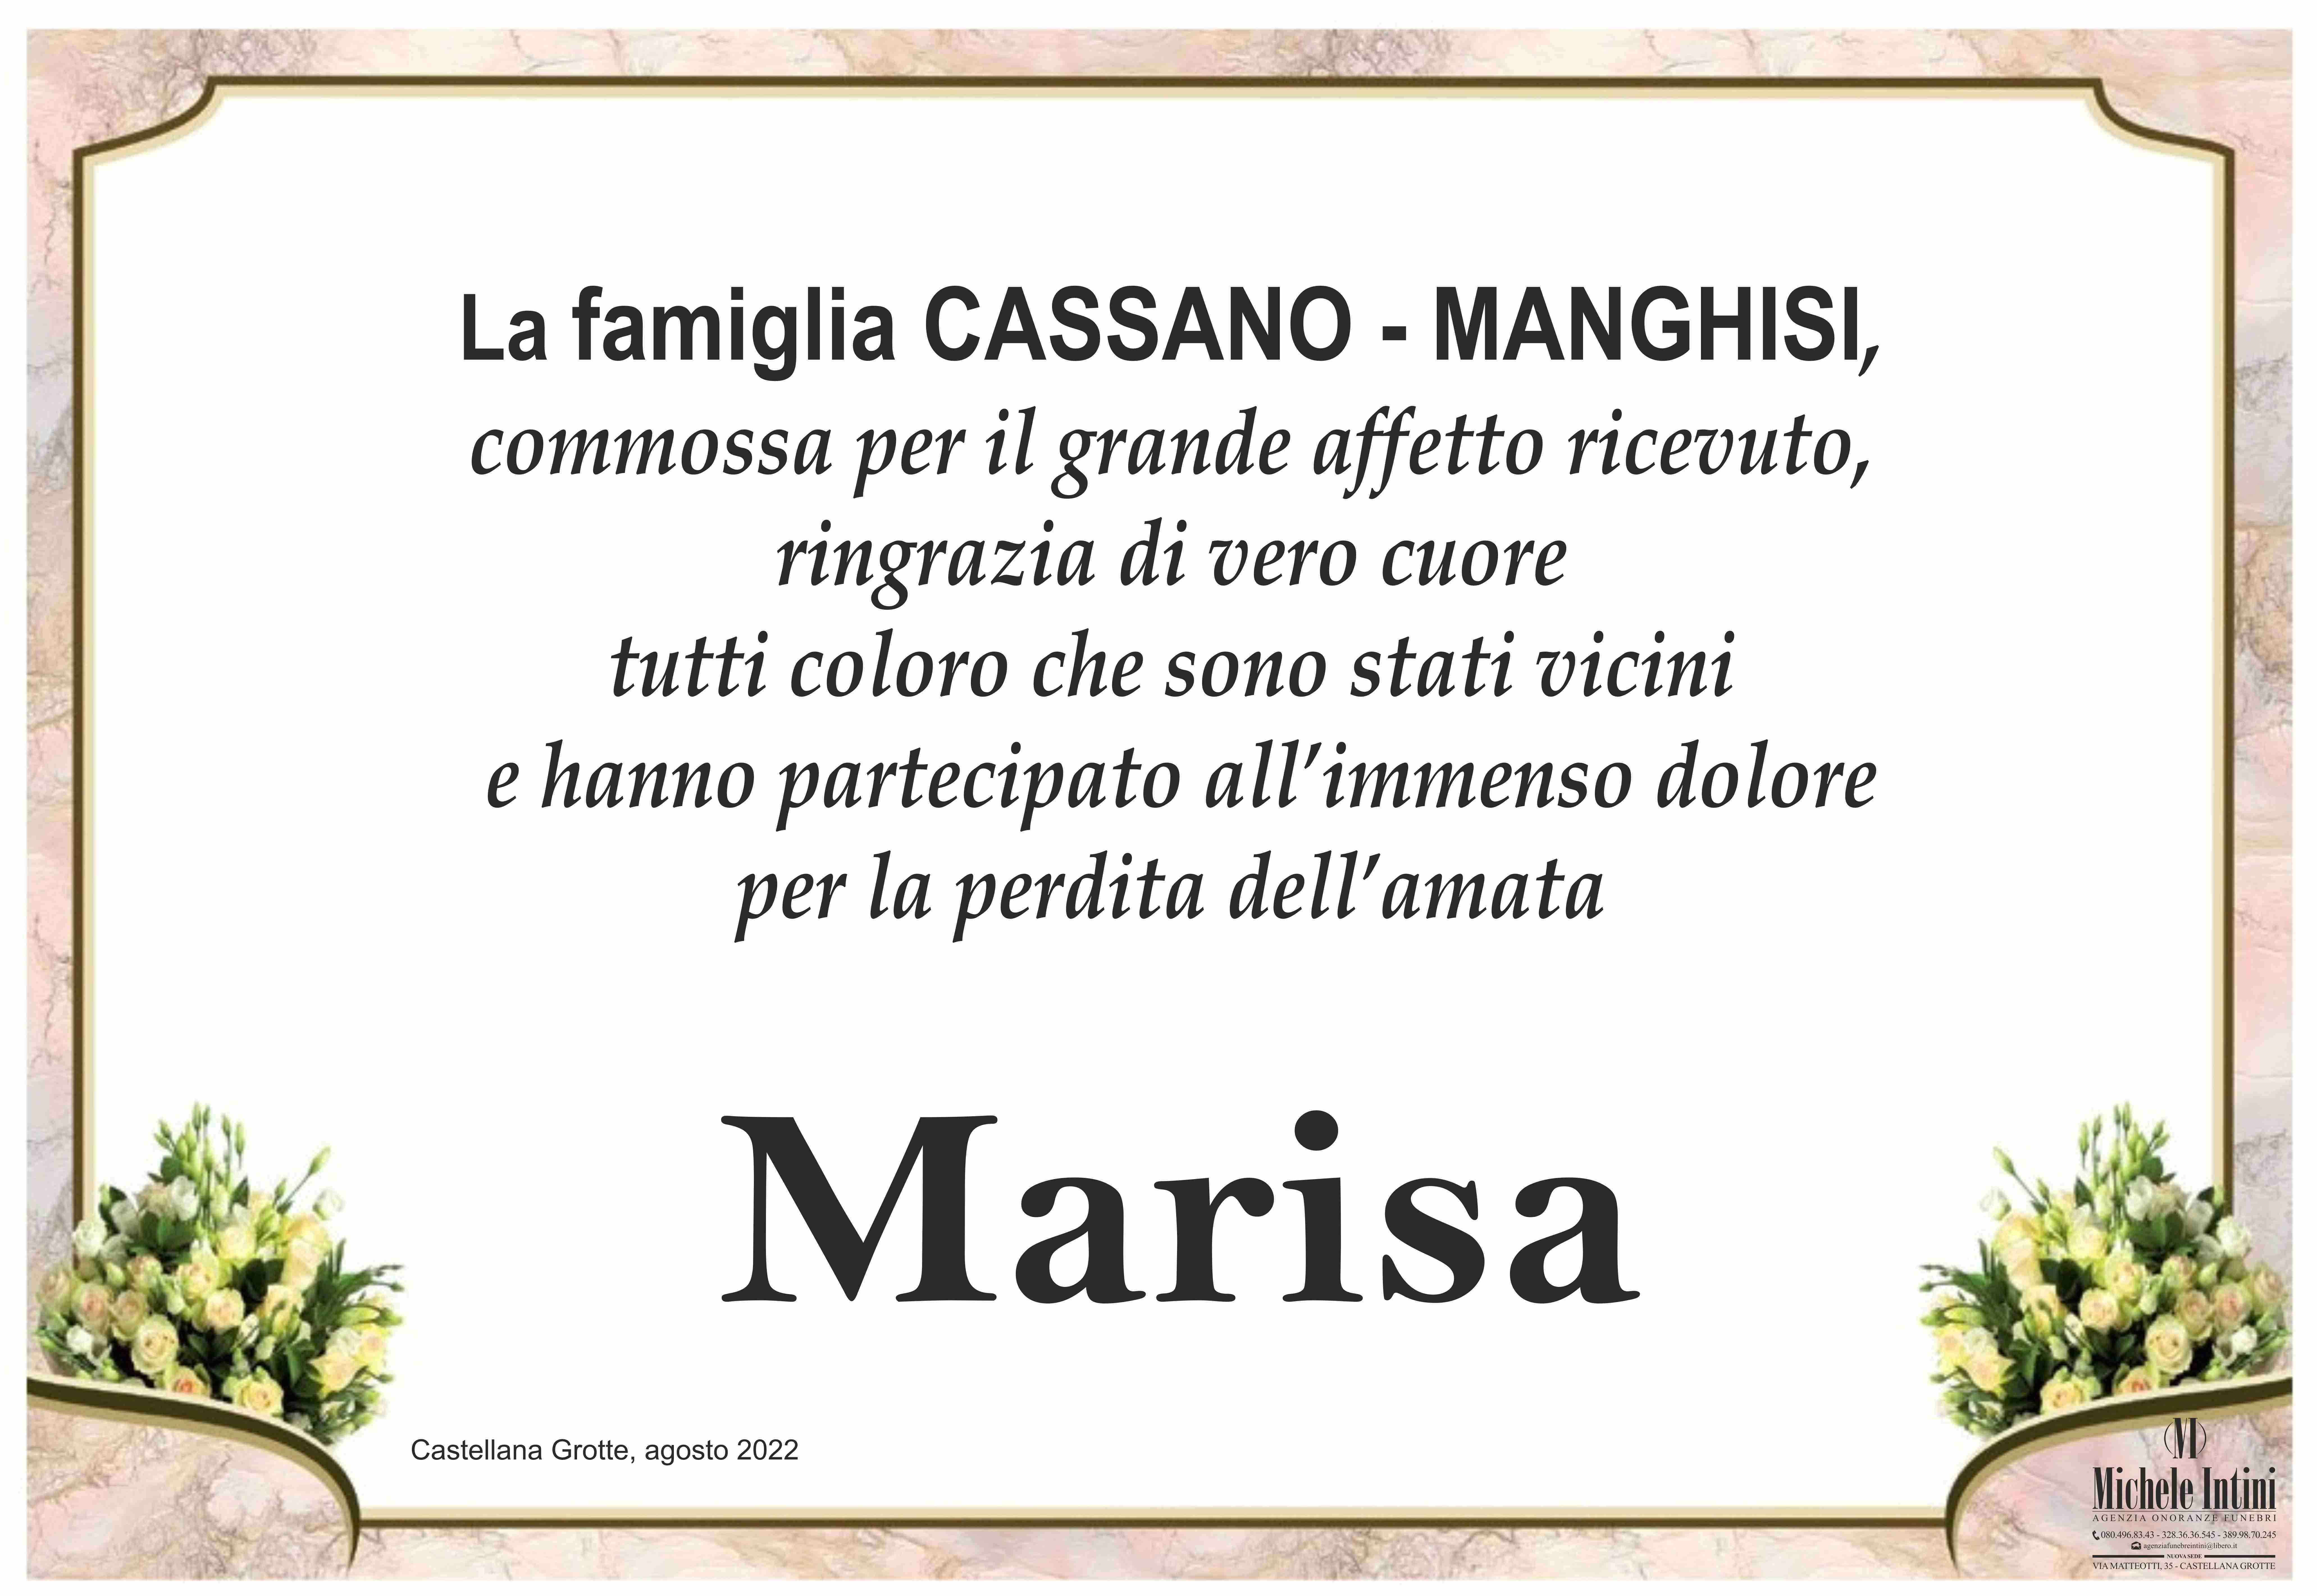 Marisa Manghisi